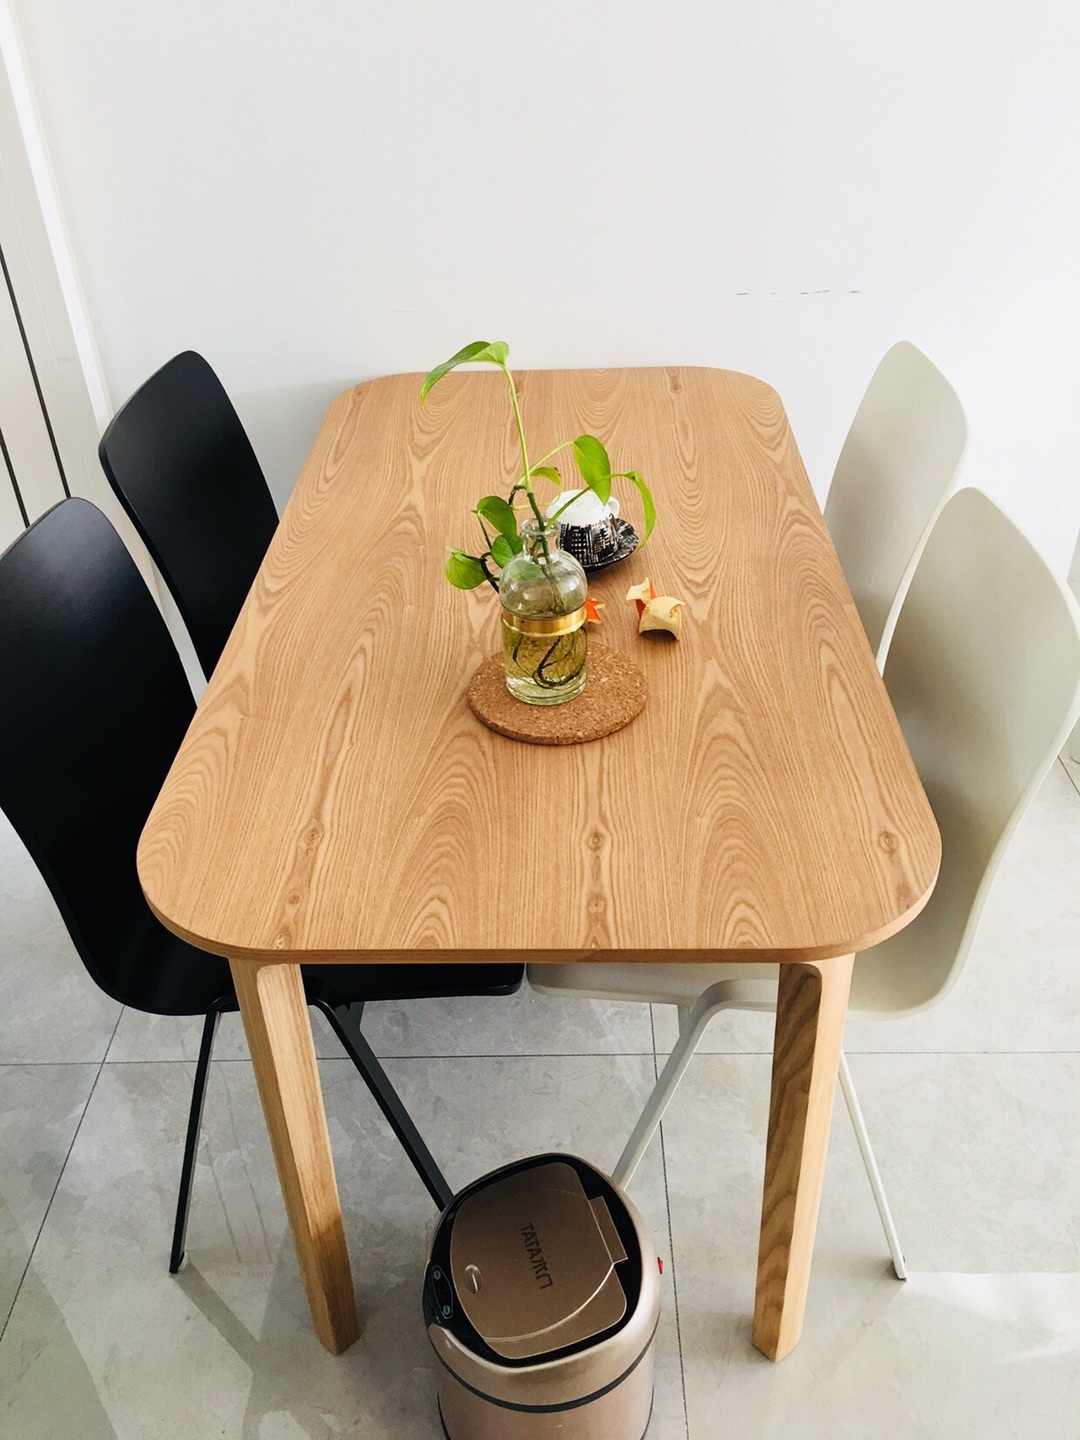 杨对瓦檐实木餐桌® 1.3/1.8米发布的晒单效果图及评价